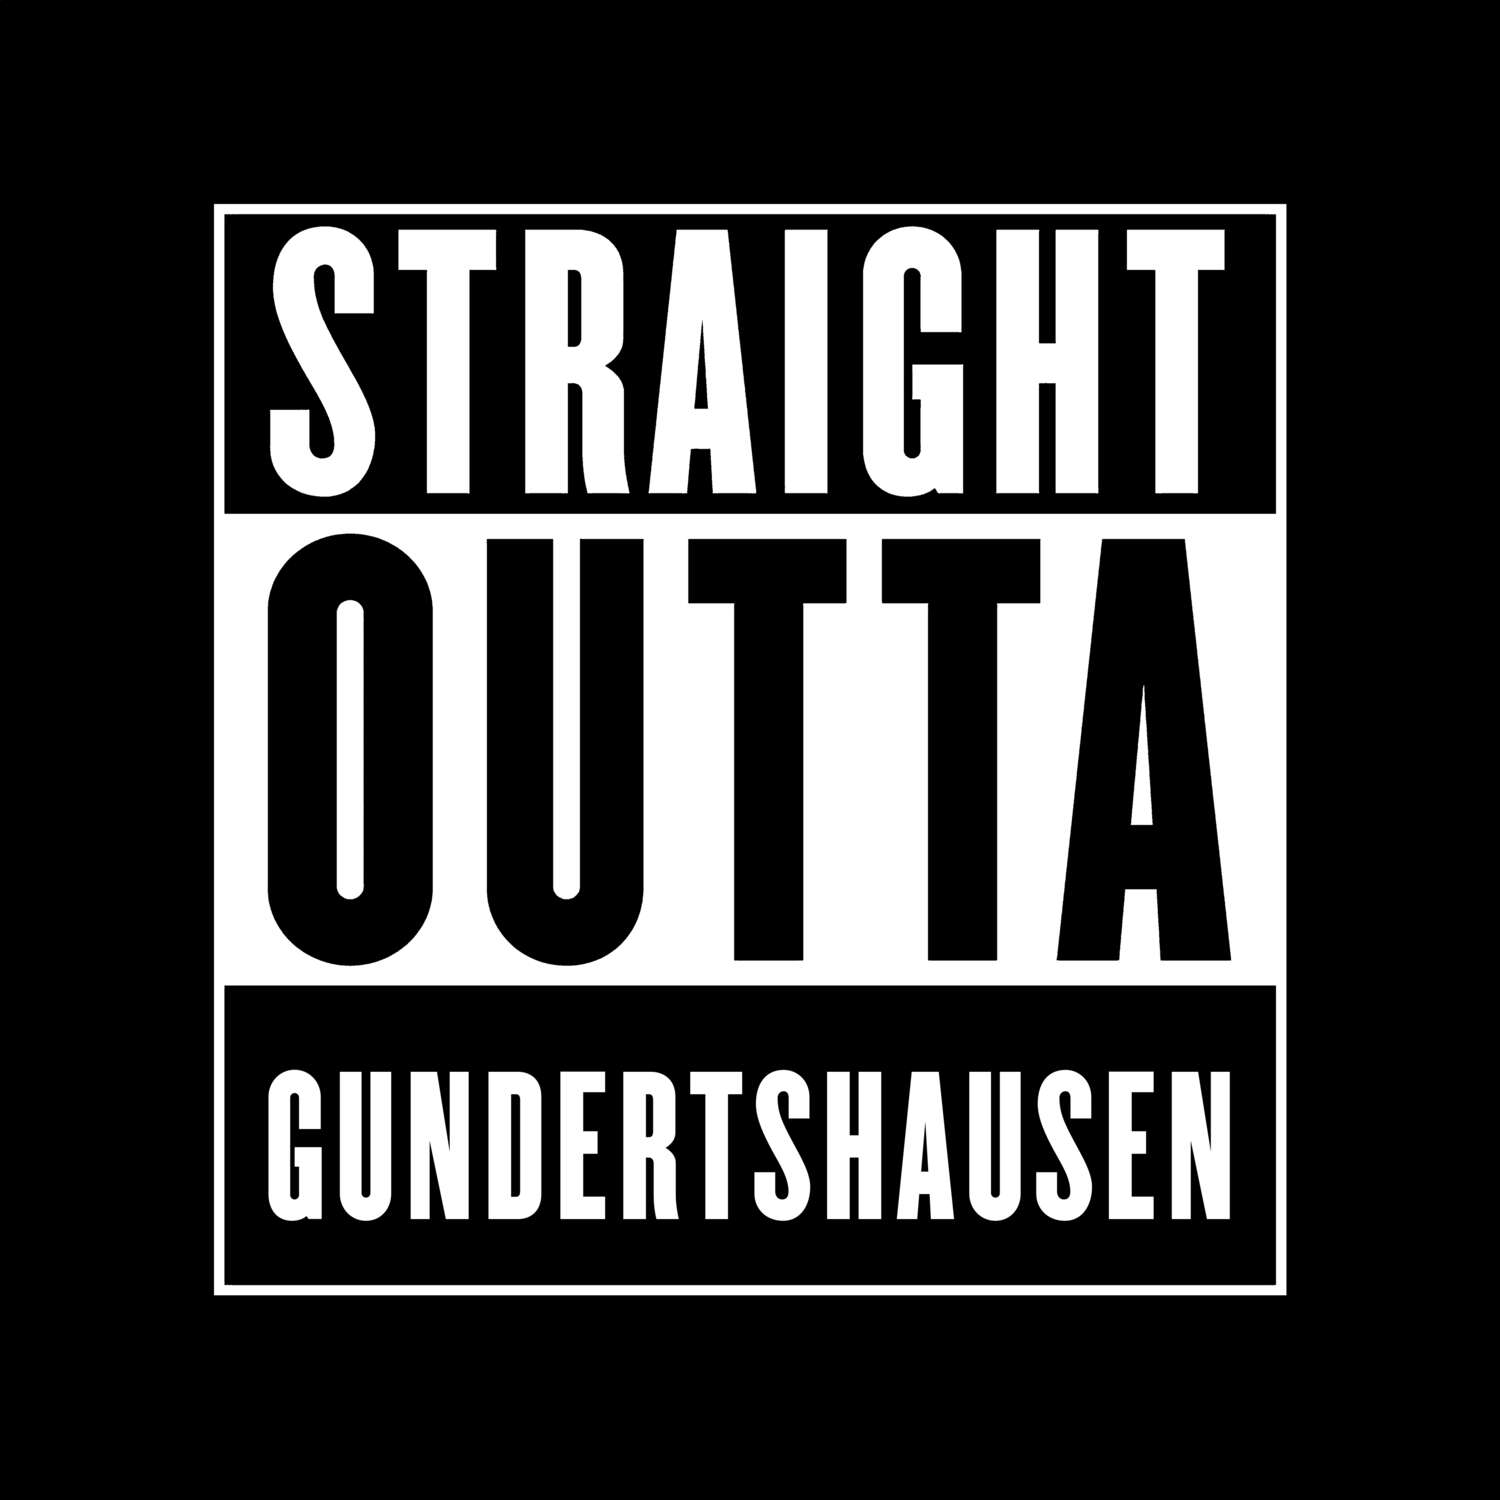 Gundertshausen T-Shirt »Straight Outta«